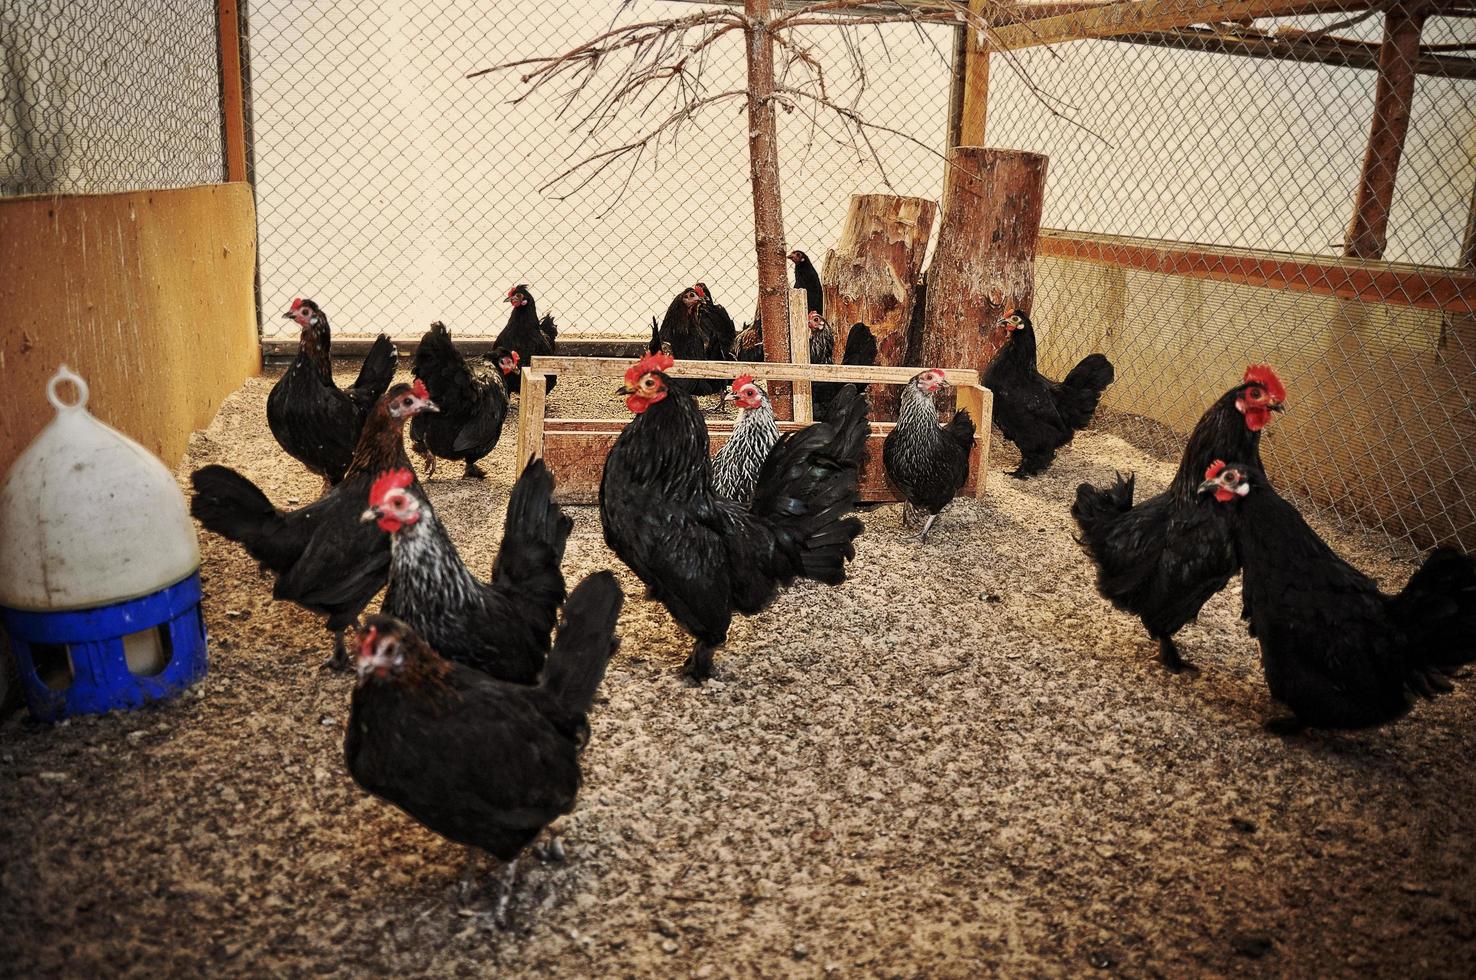 gallinas y gallos en jaula foto